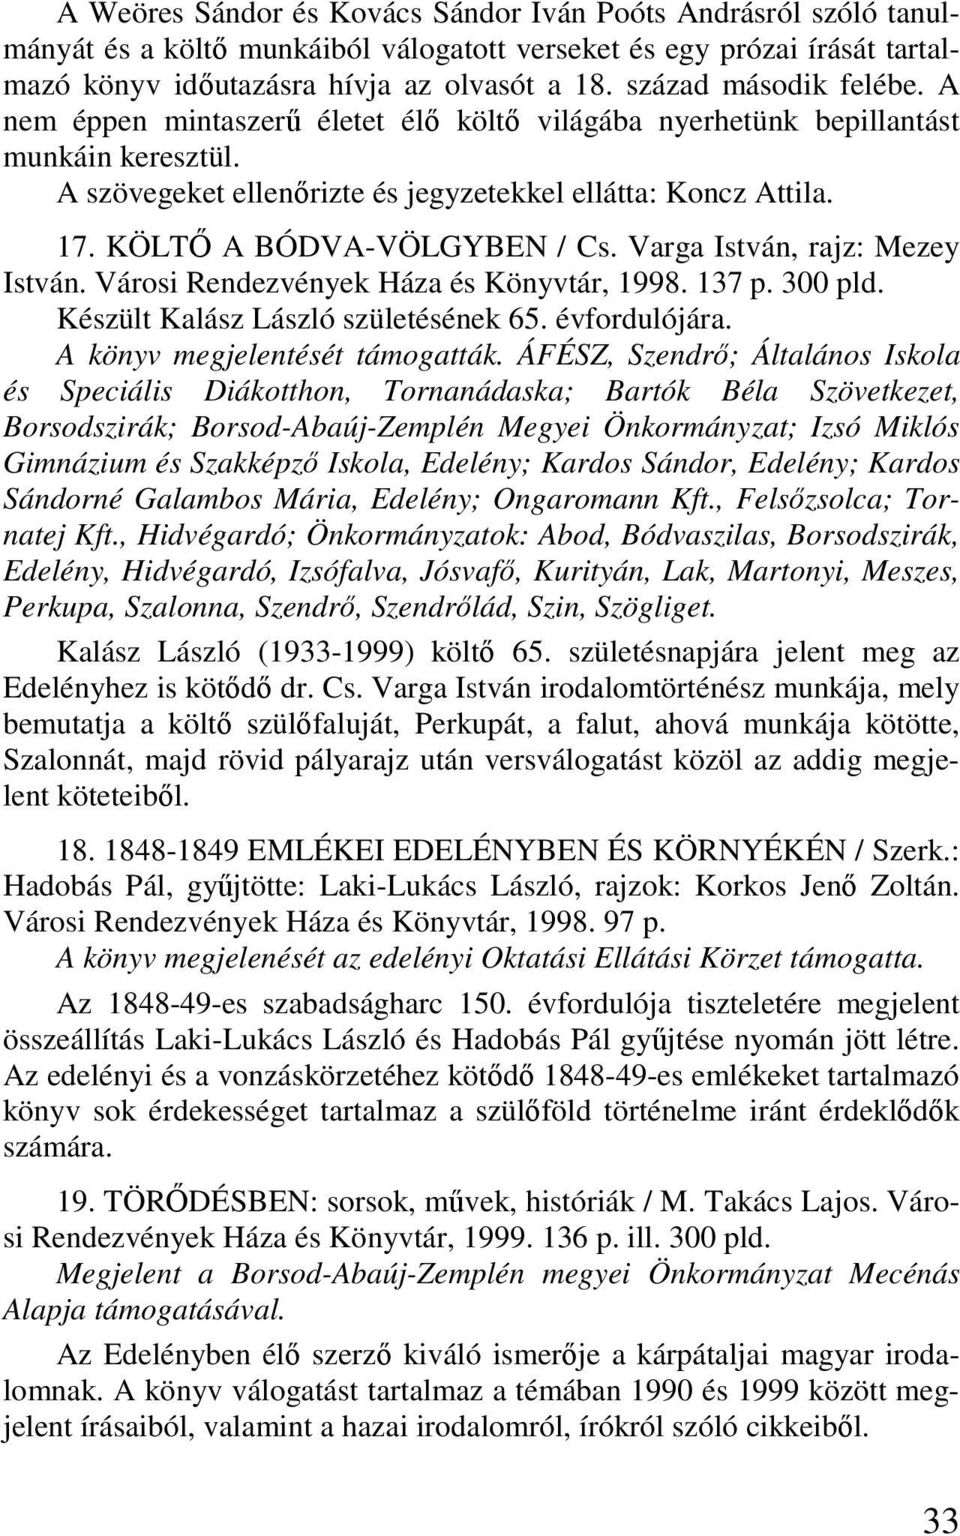 KÖLTİ A BÓDVA-VÖLGYBEN / Cs. Varga István, rajz: Mezey István. Városi Rendezvények Háza és Könyvtár, 1998. 137 p. 300 pld. Készült Kalász László születésének 65. évfordulójára.